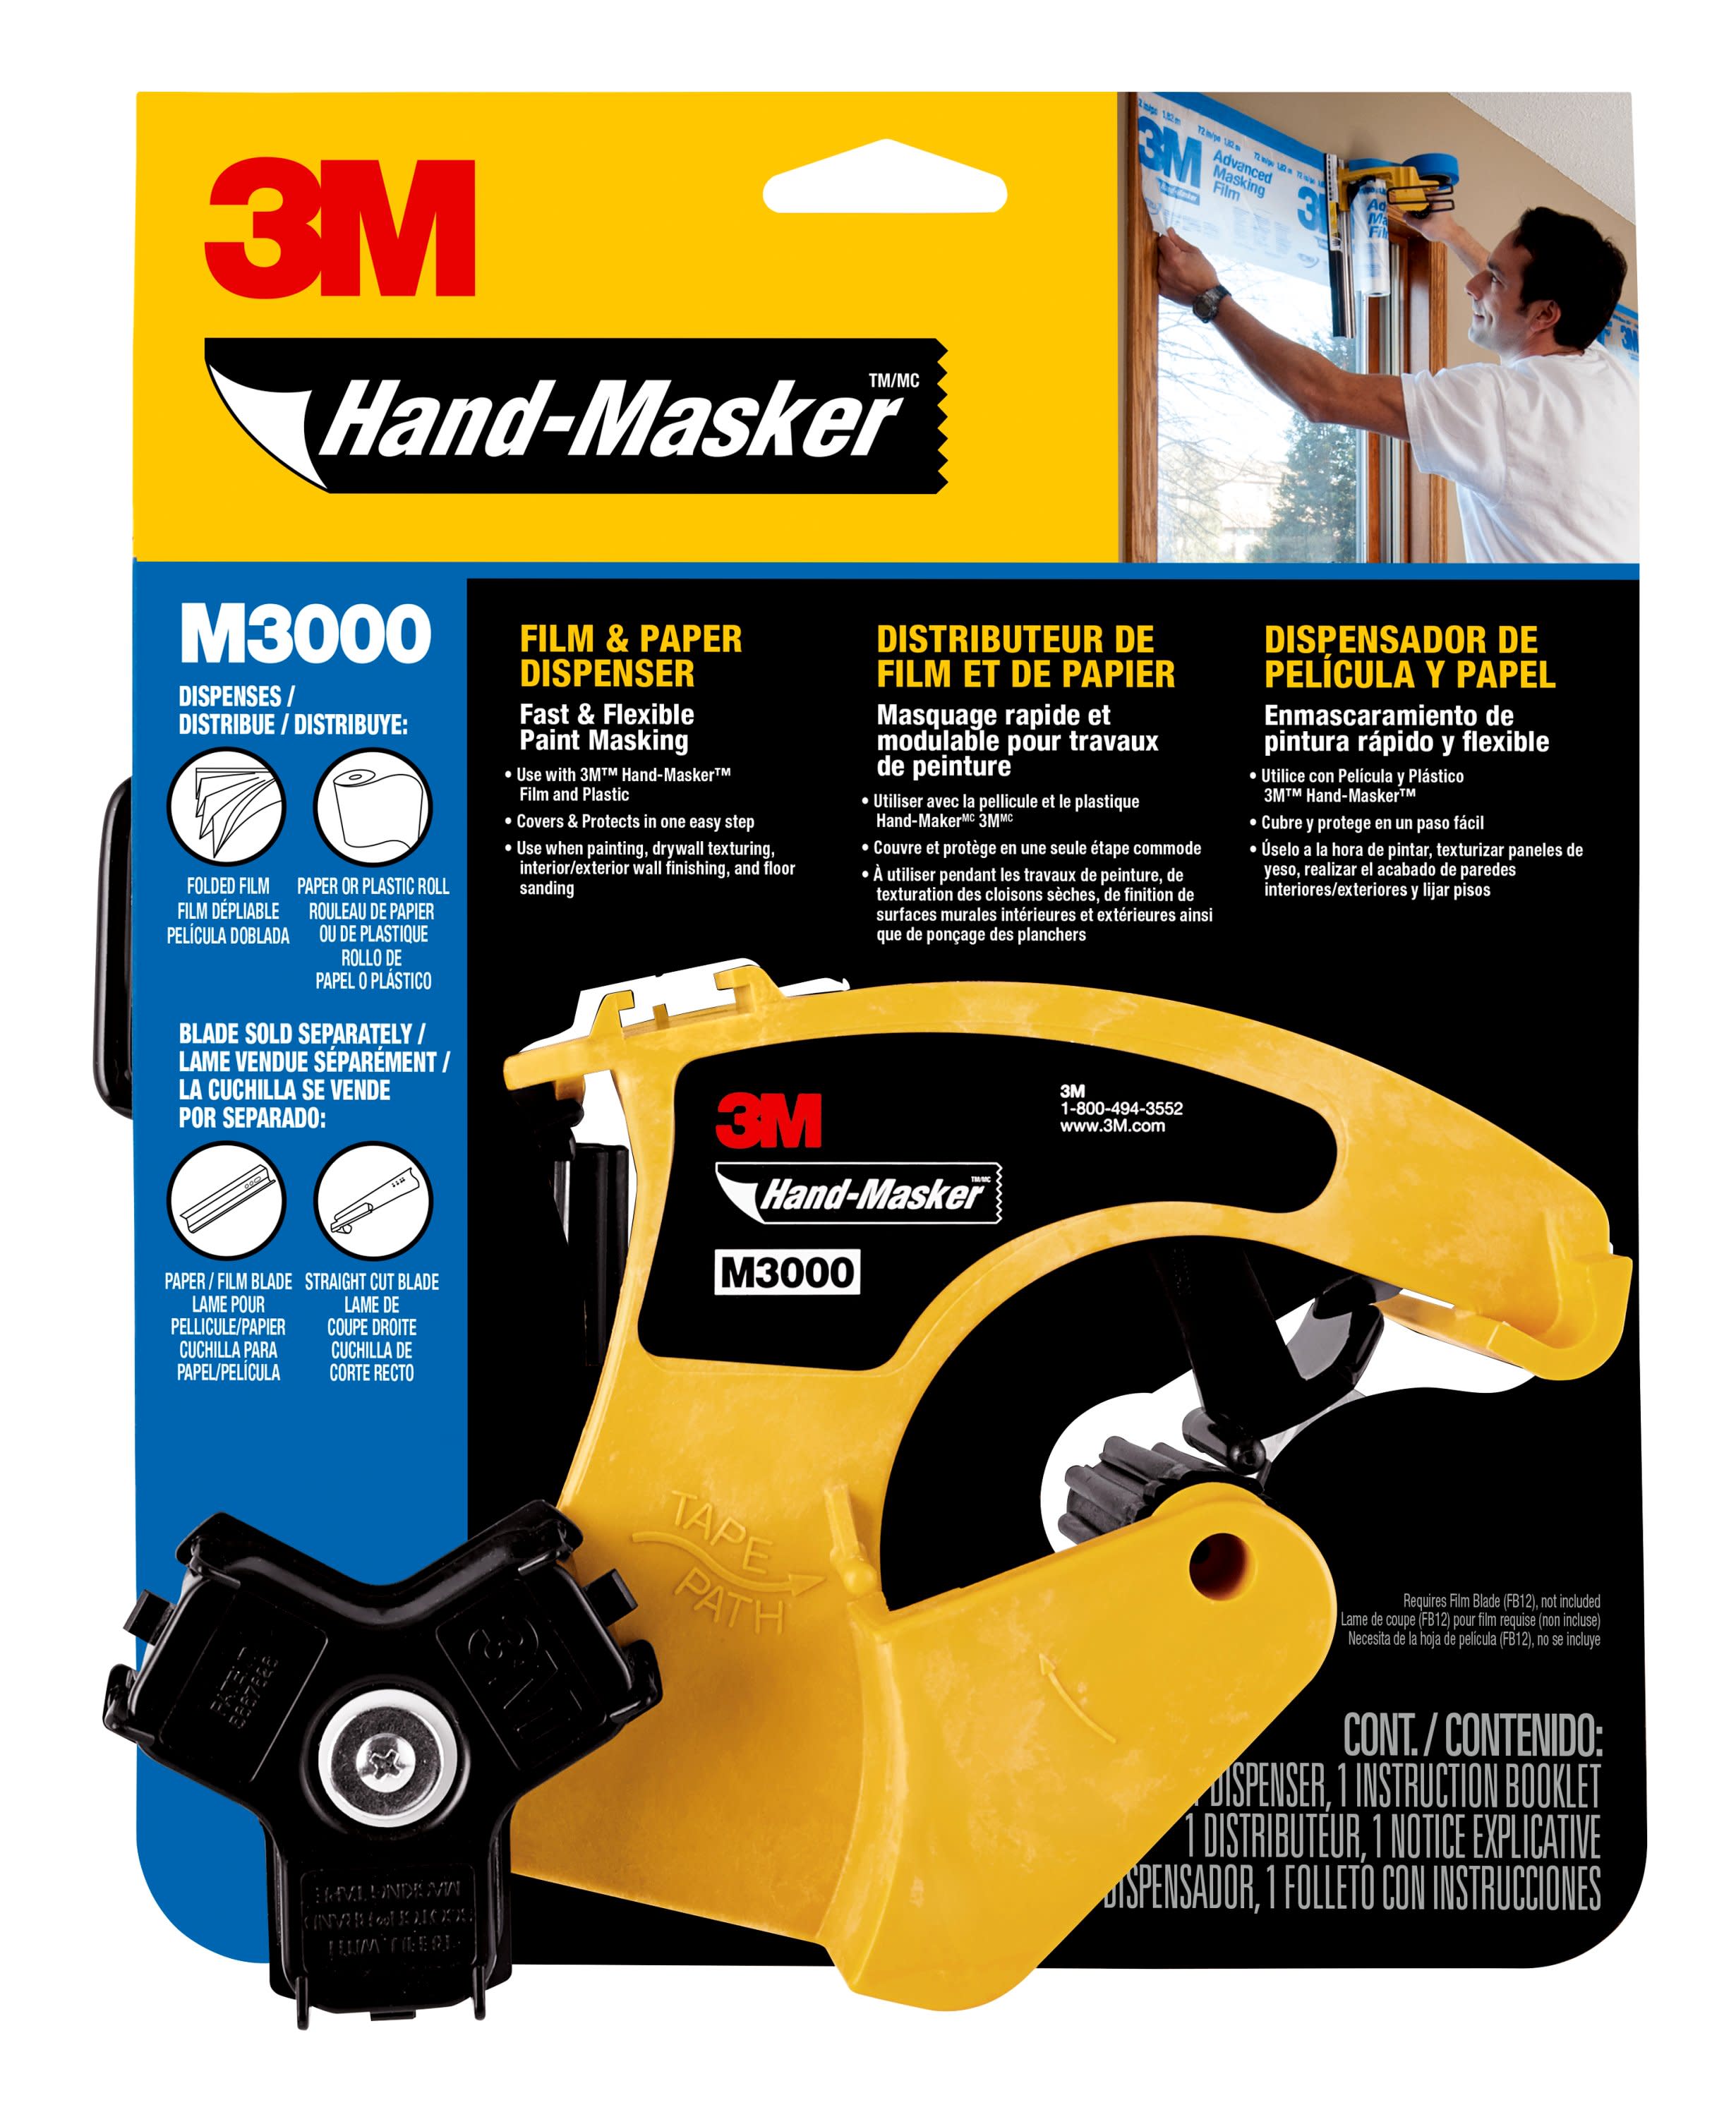 3M M3000 - Hand-Masker Dispenser